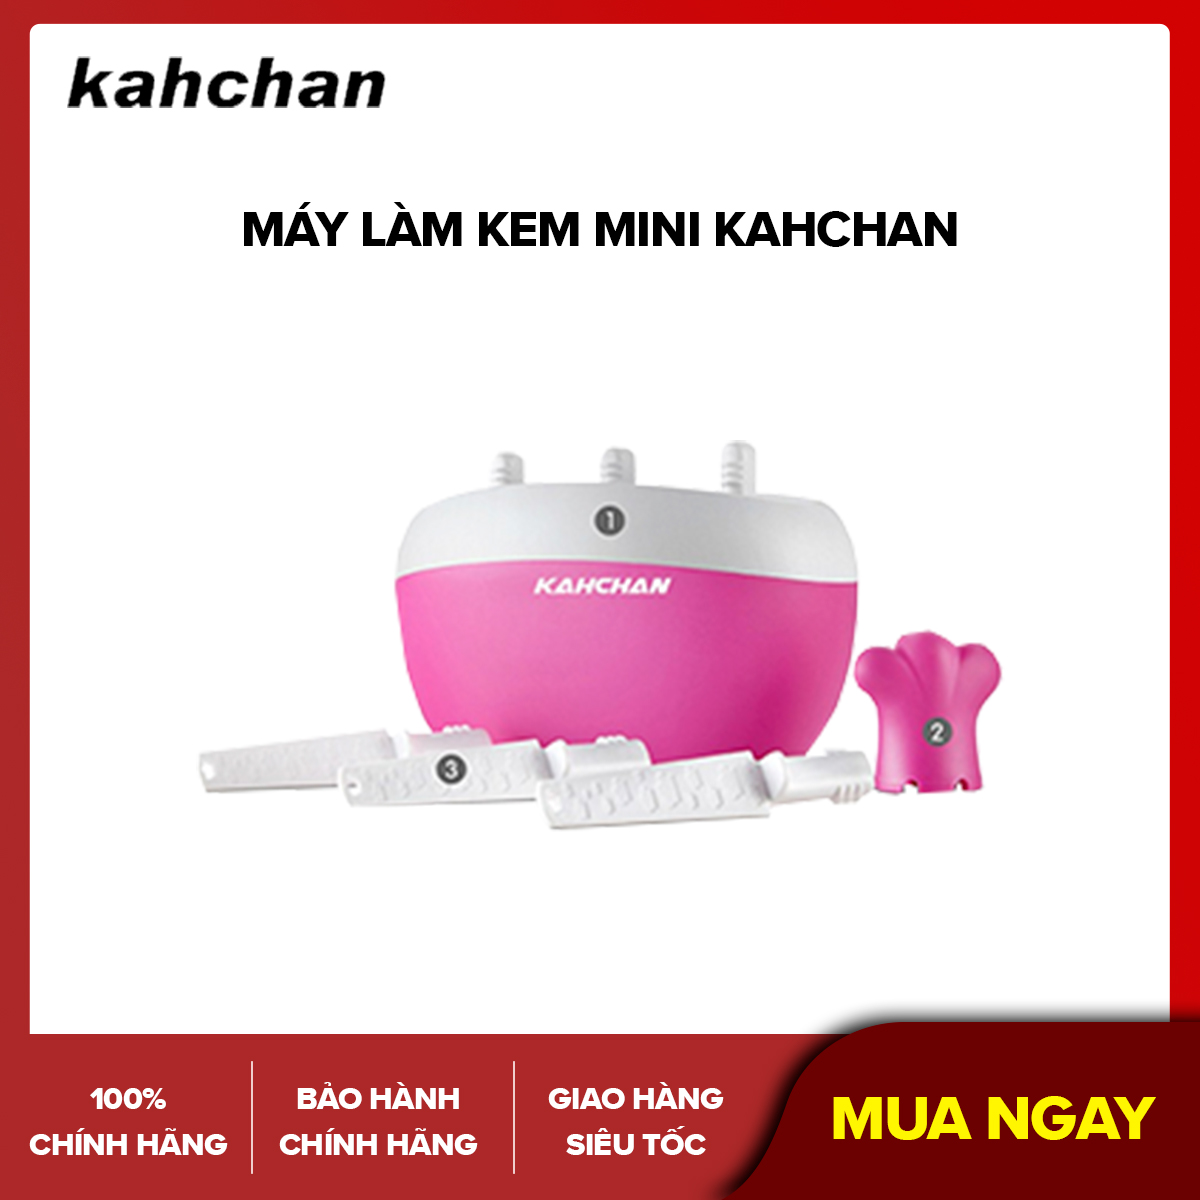 Máy làm kem mini Kahchan - Làm kem tươi siêu nhanh - Sử dụng trực tiếp nước ép trái cây - Hàng chính hãng